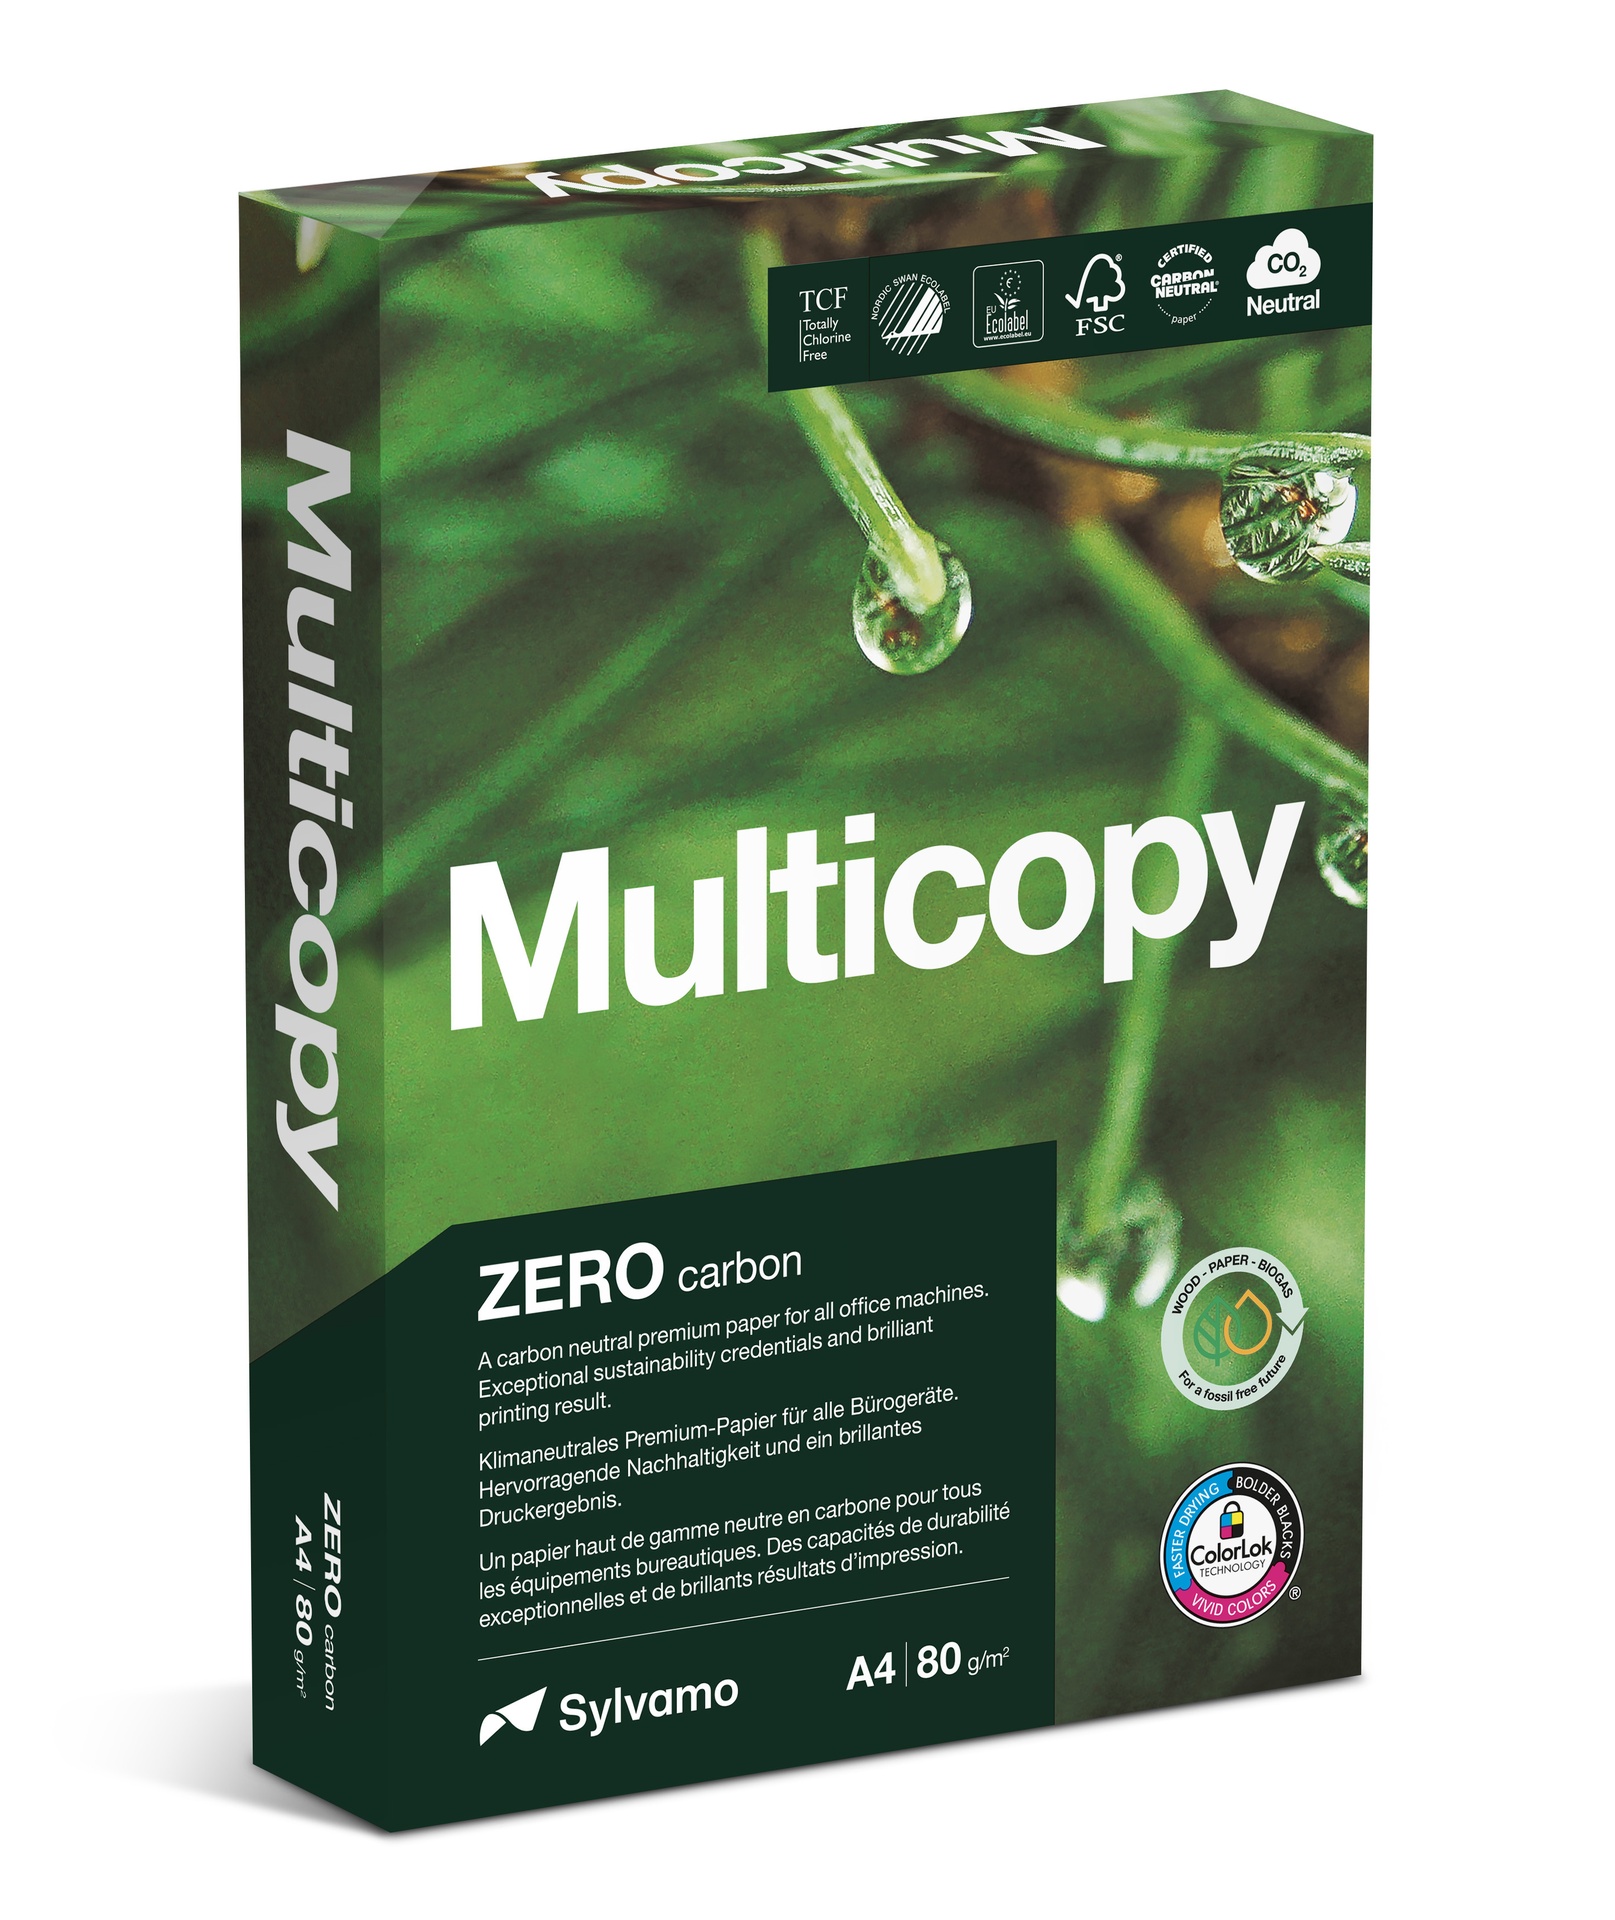 [1158001] Kopieringspapper Multicopy Zero A4 80g 500/fp